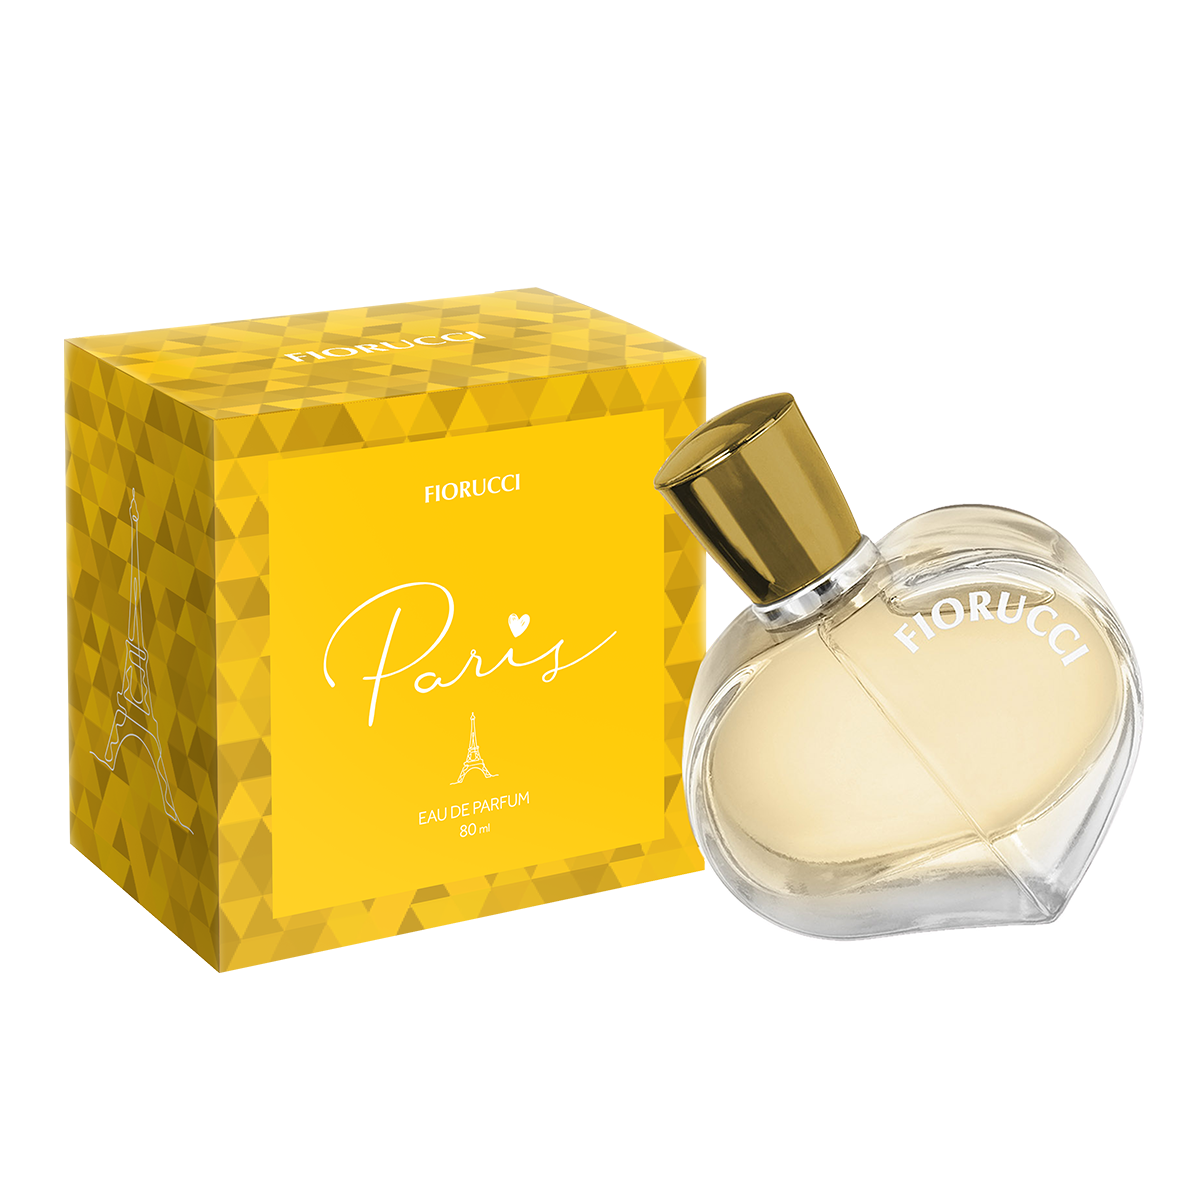 Fiorucci - Eau de Parfum - Paris - 80 ml